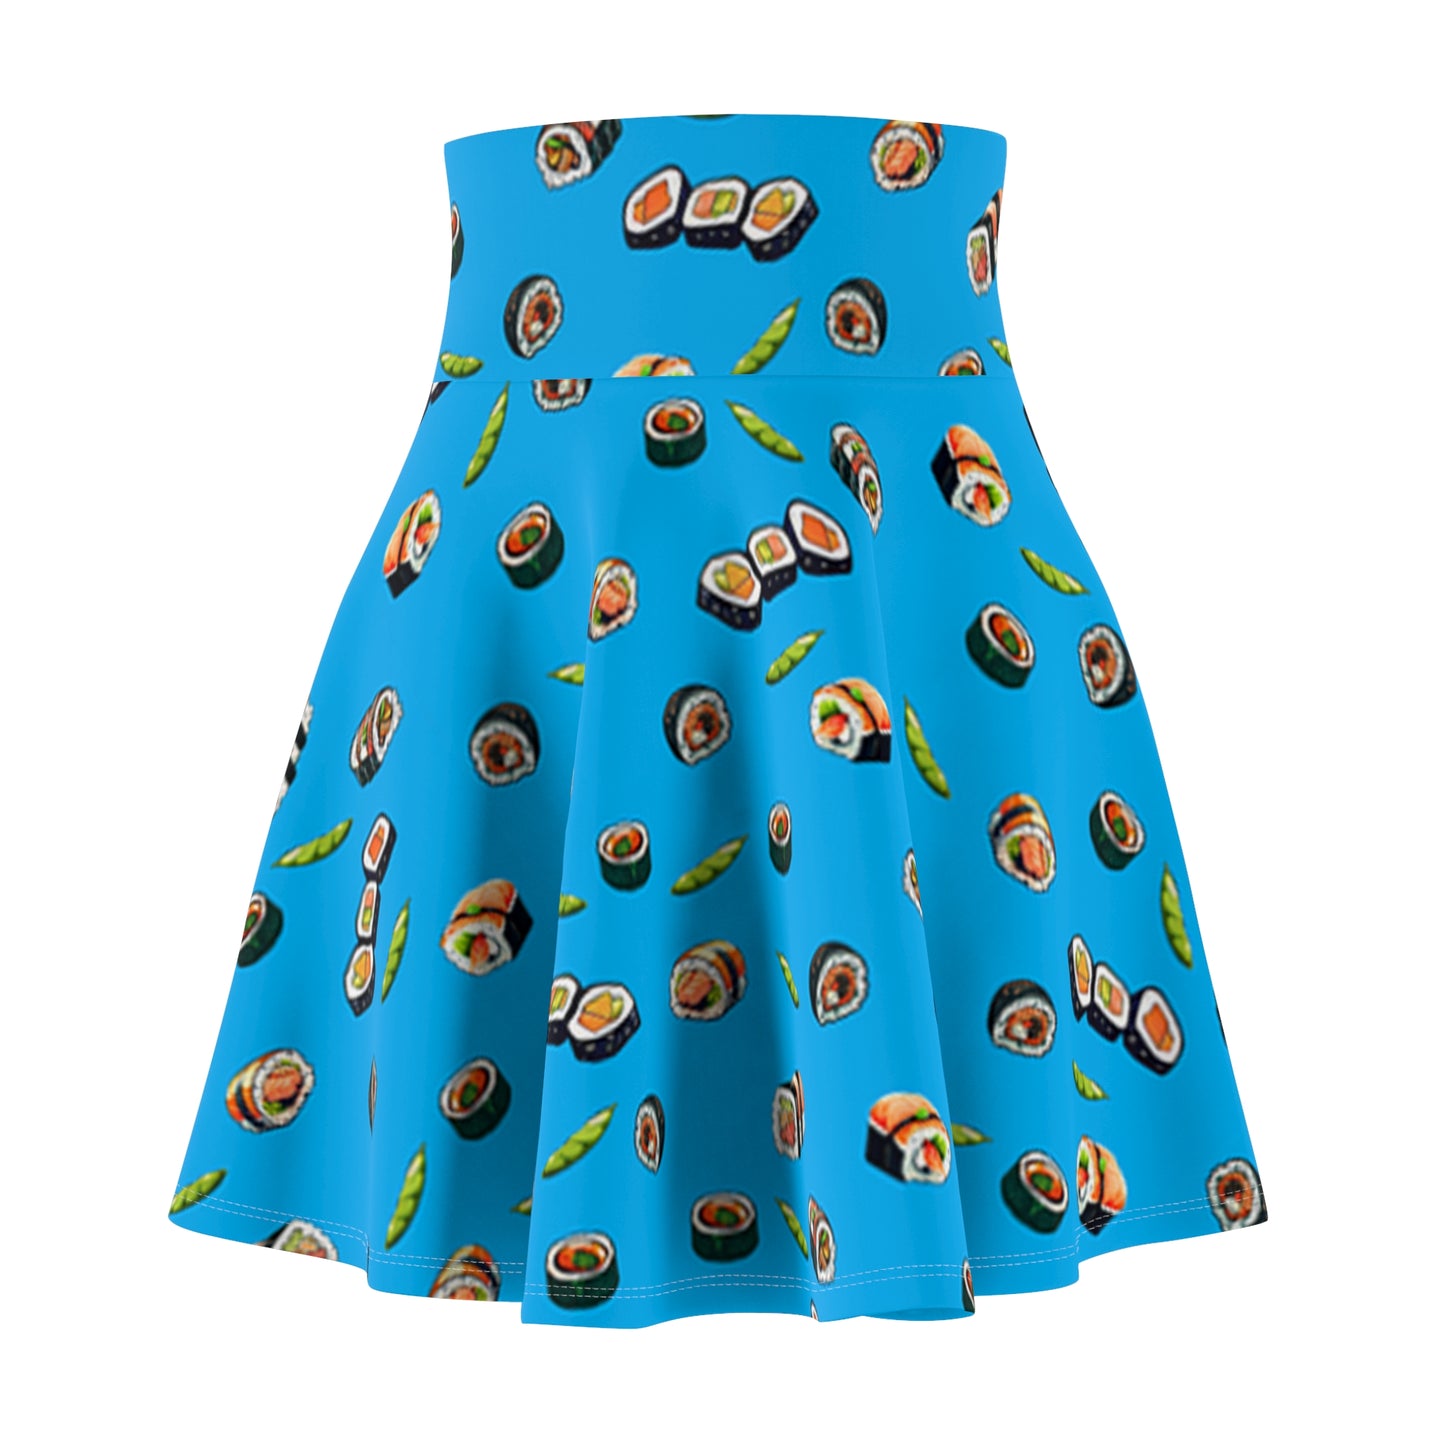 sushi skirt, Women's Skater Skirt, sushi dress, sushi, sushi lover, d&d, table top, gamer, gamer girl, nerdy girl, nerdy, food, food skirt, food dress, nerdy dresses